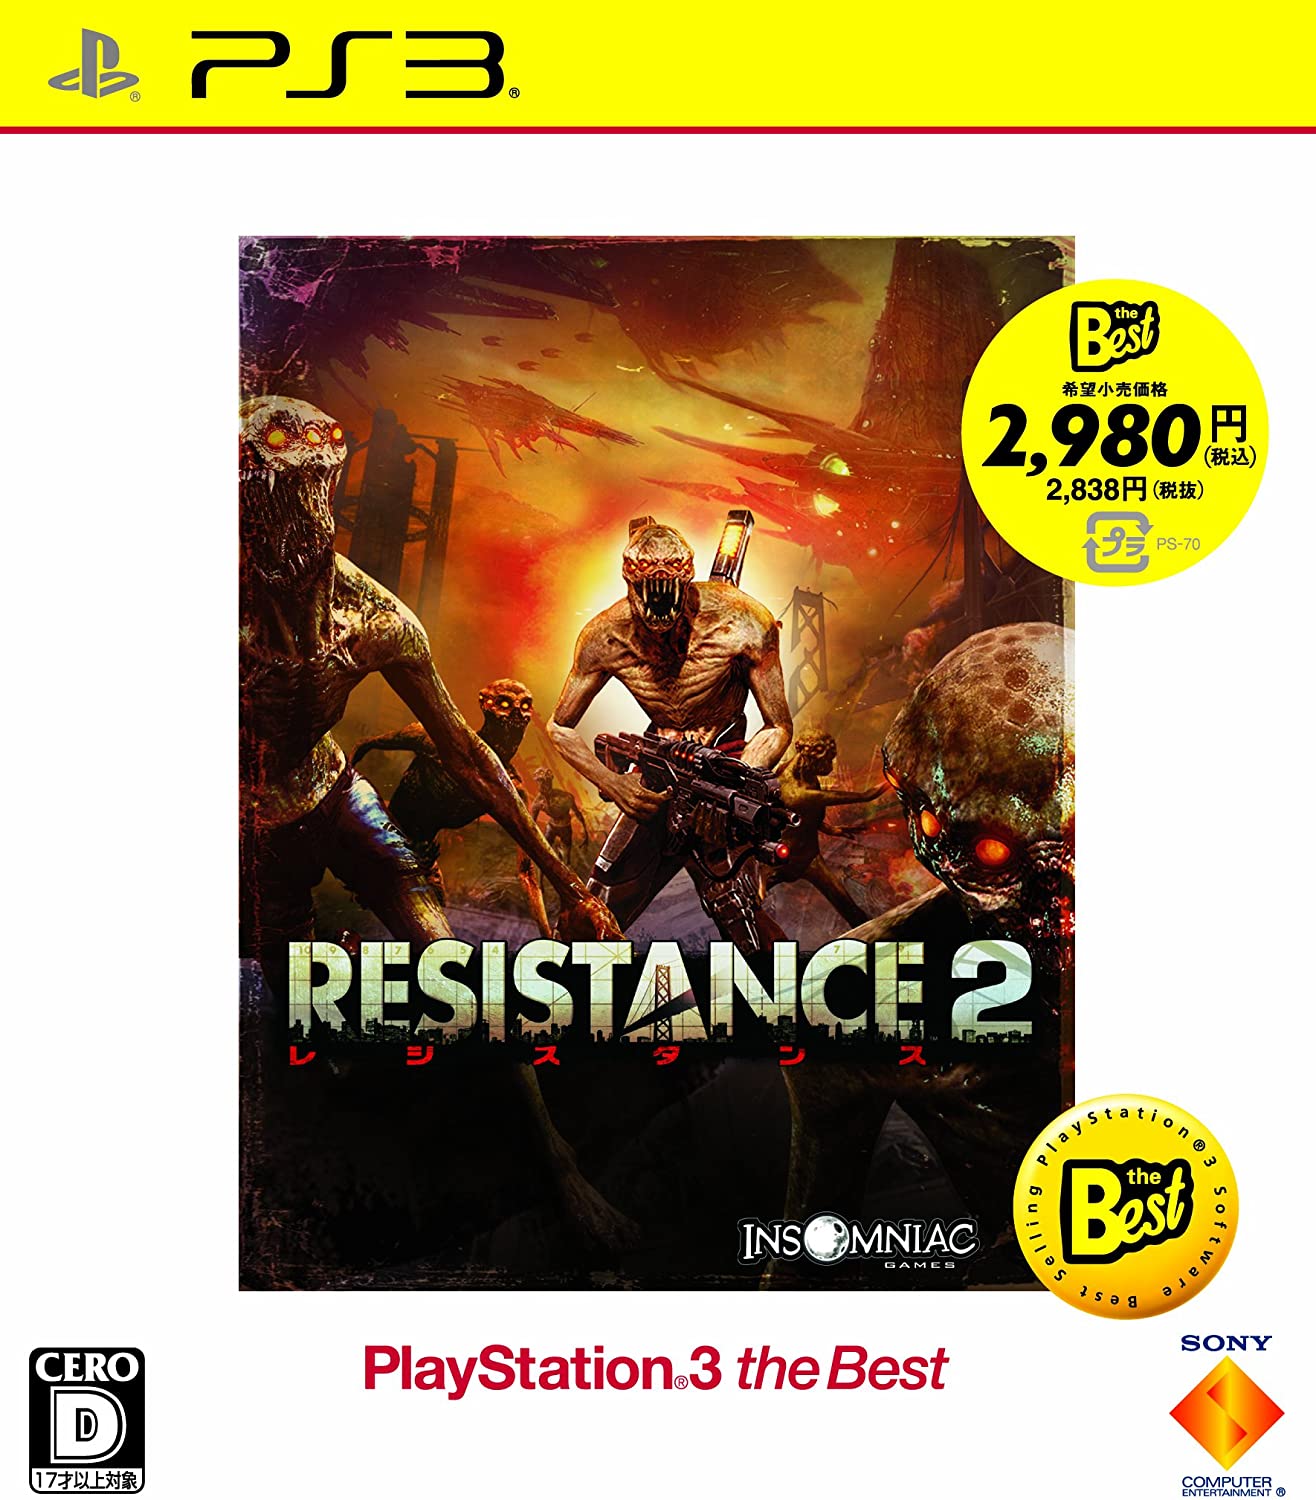 【送料無料】【中古】PS3 プレイステーション3 RESISTANCE 2 (レジスタンス 2) PlayStation 3 the Best